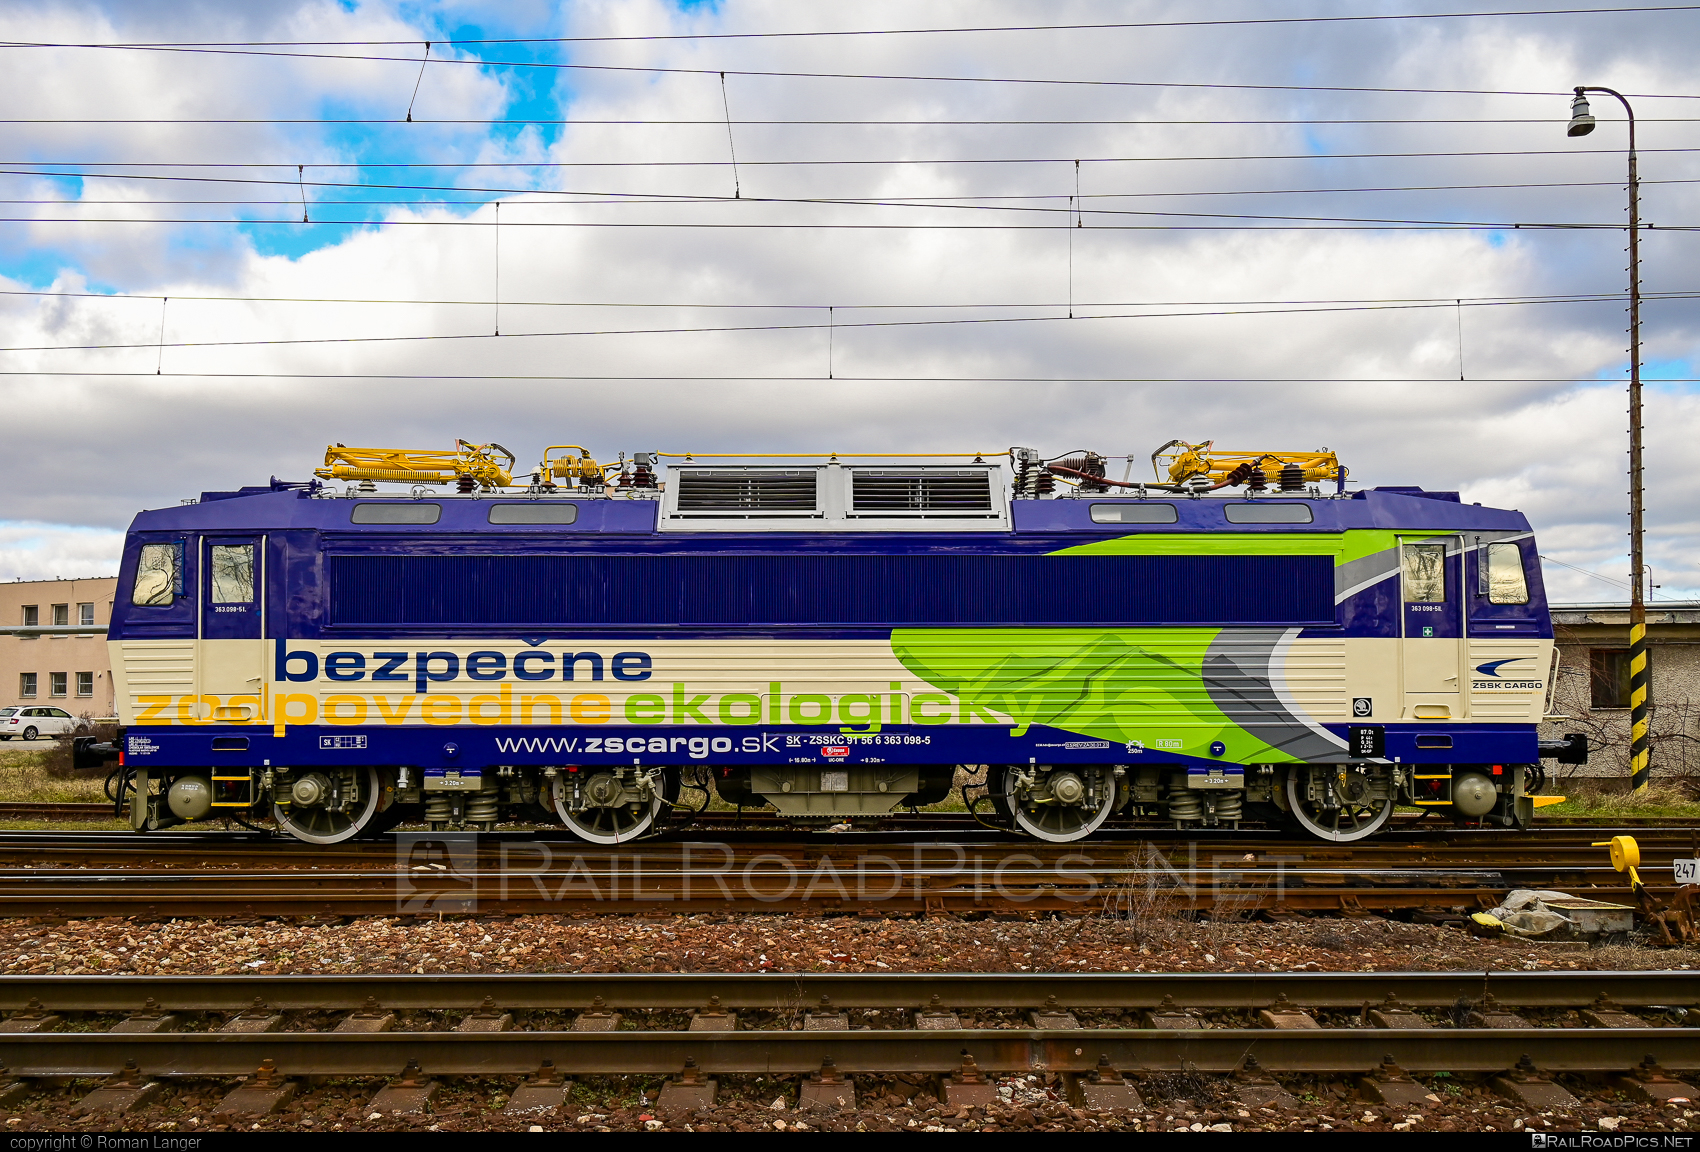 Škoda 69E - 363 098-5 operated by Železničná Spoločnost' Cargo Slovakia a.s. #ZeleznicnaSpolocnostCargoSlovakia #es4991 #eso #locomotive363 #skoda #skoda69e #zsskcargo